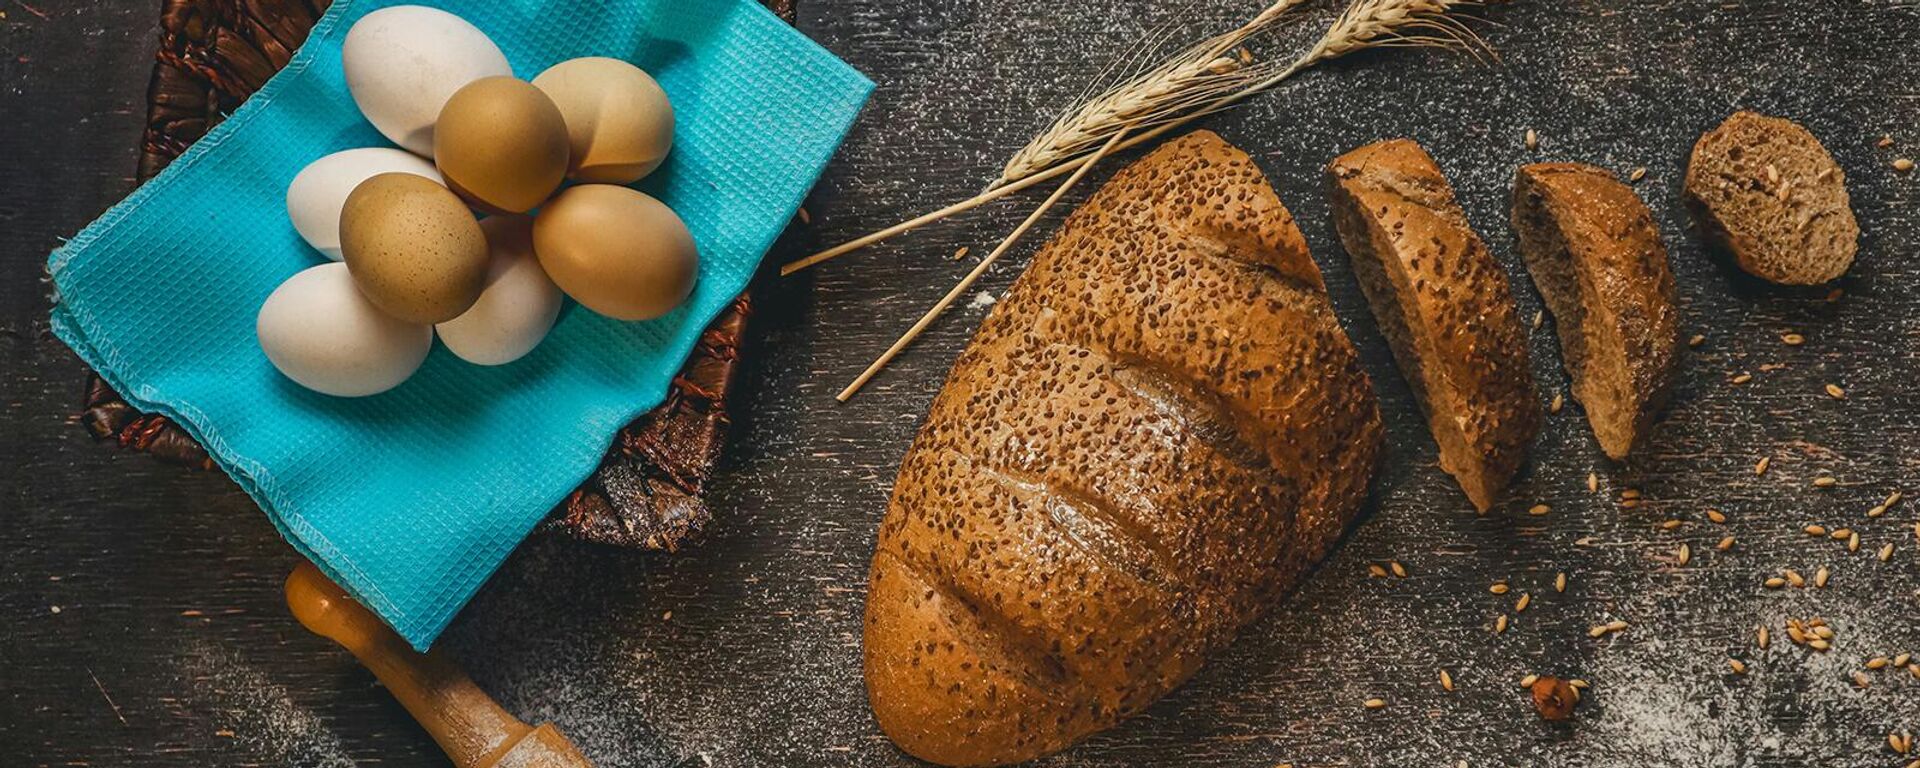 Нарезанный хлеб, яйца и молоко на столе - Sputnik Արմենիա, 1920, 10.04.2021